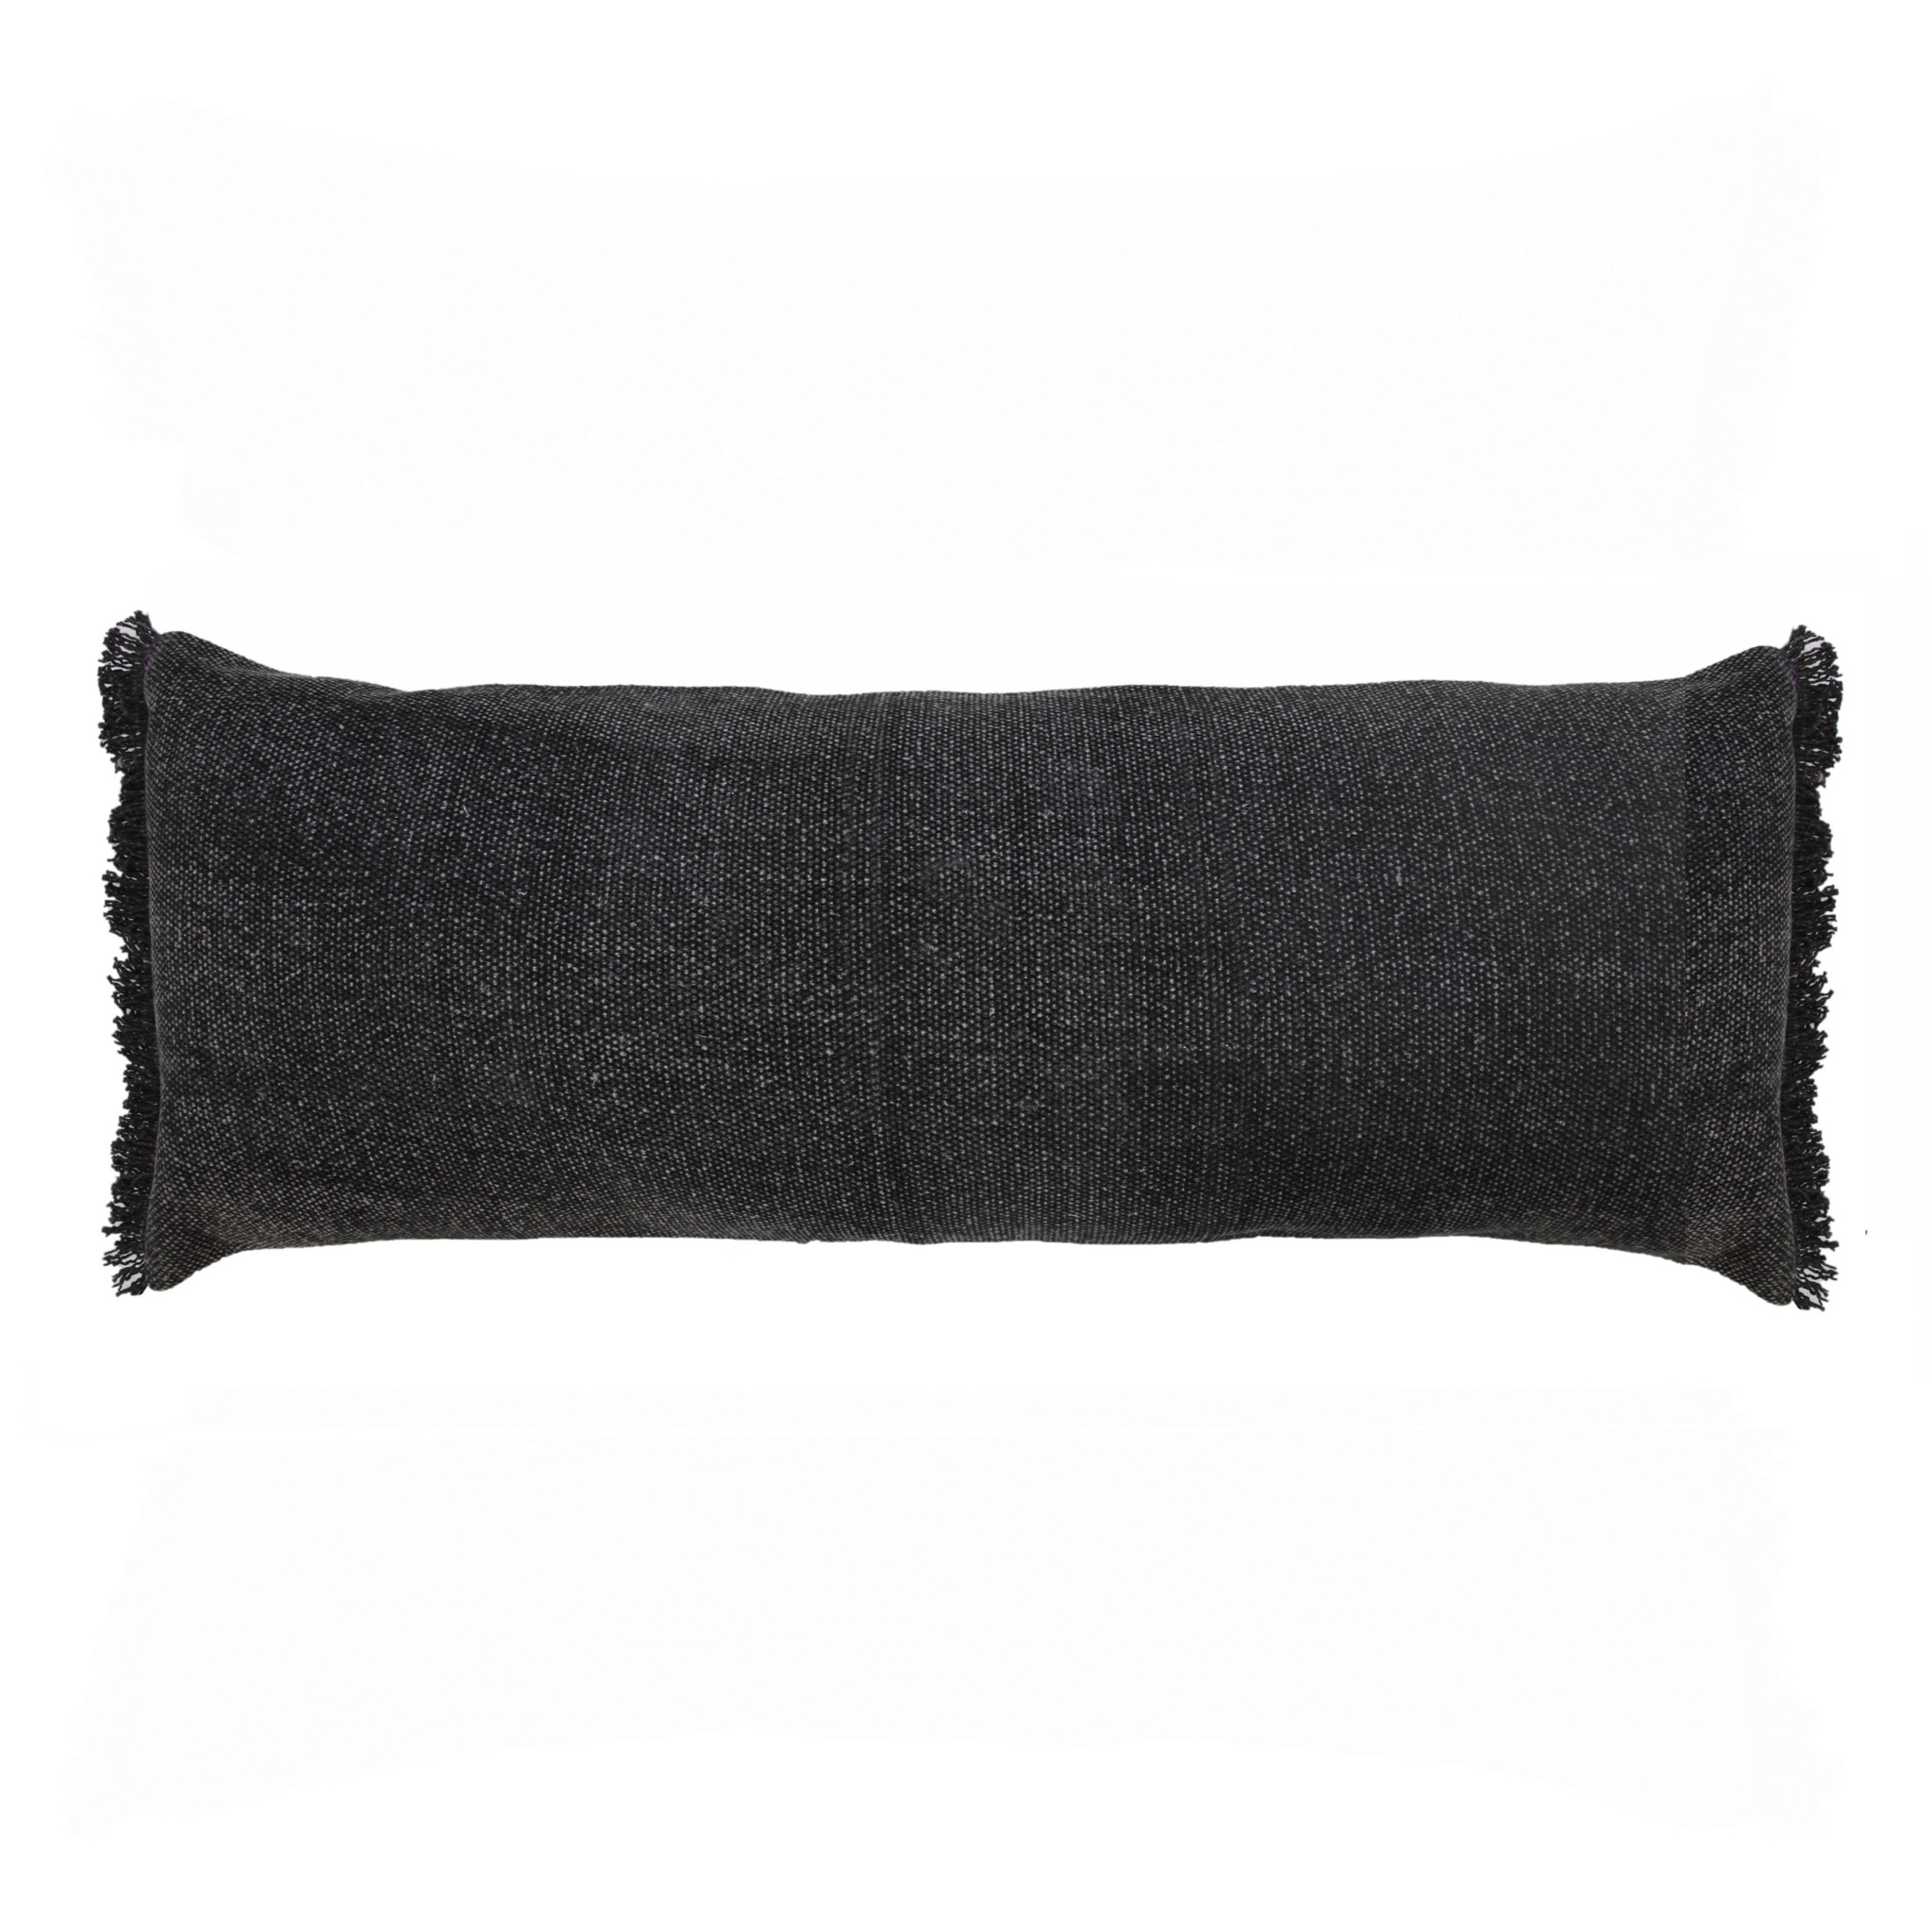 14" X 36" Jet Black 100% Cotton Zippered Pillow-517341-1